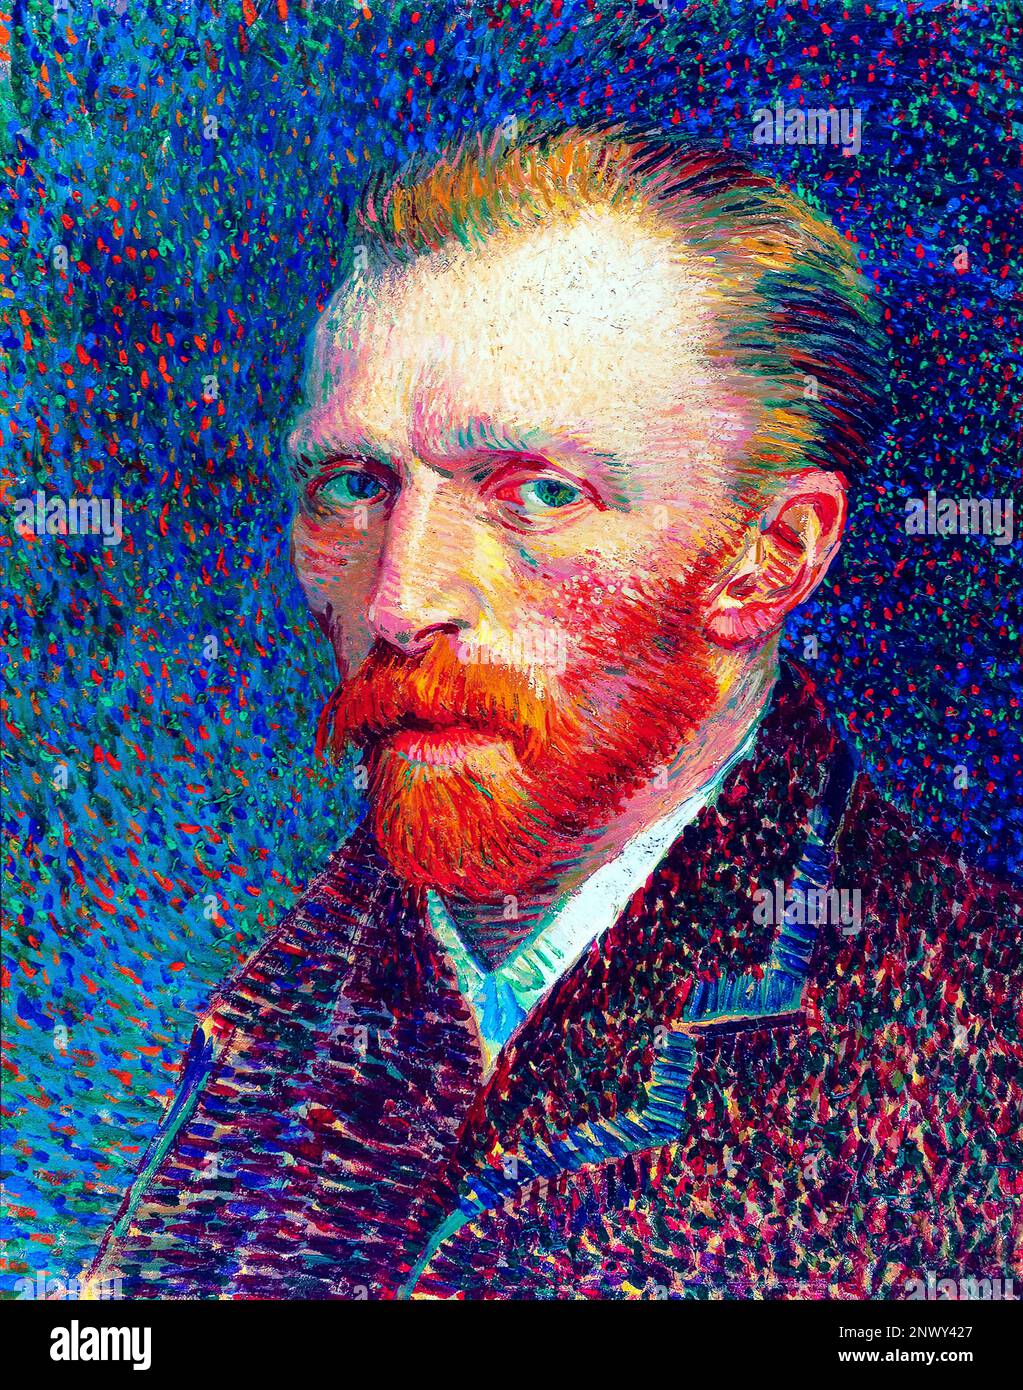 Self portrait, Vincent Van Gogh painting. Stock Photo